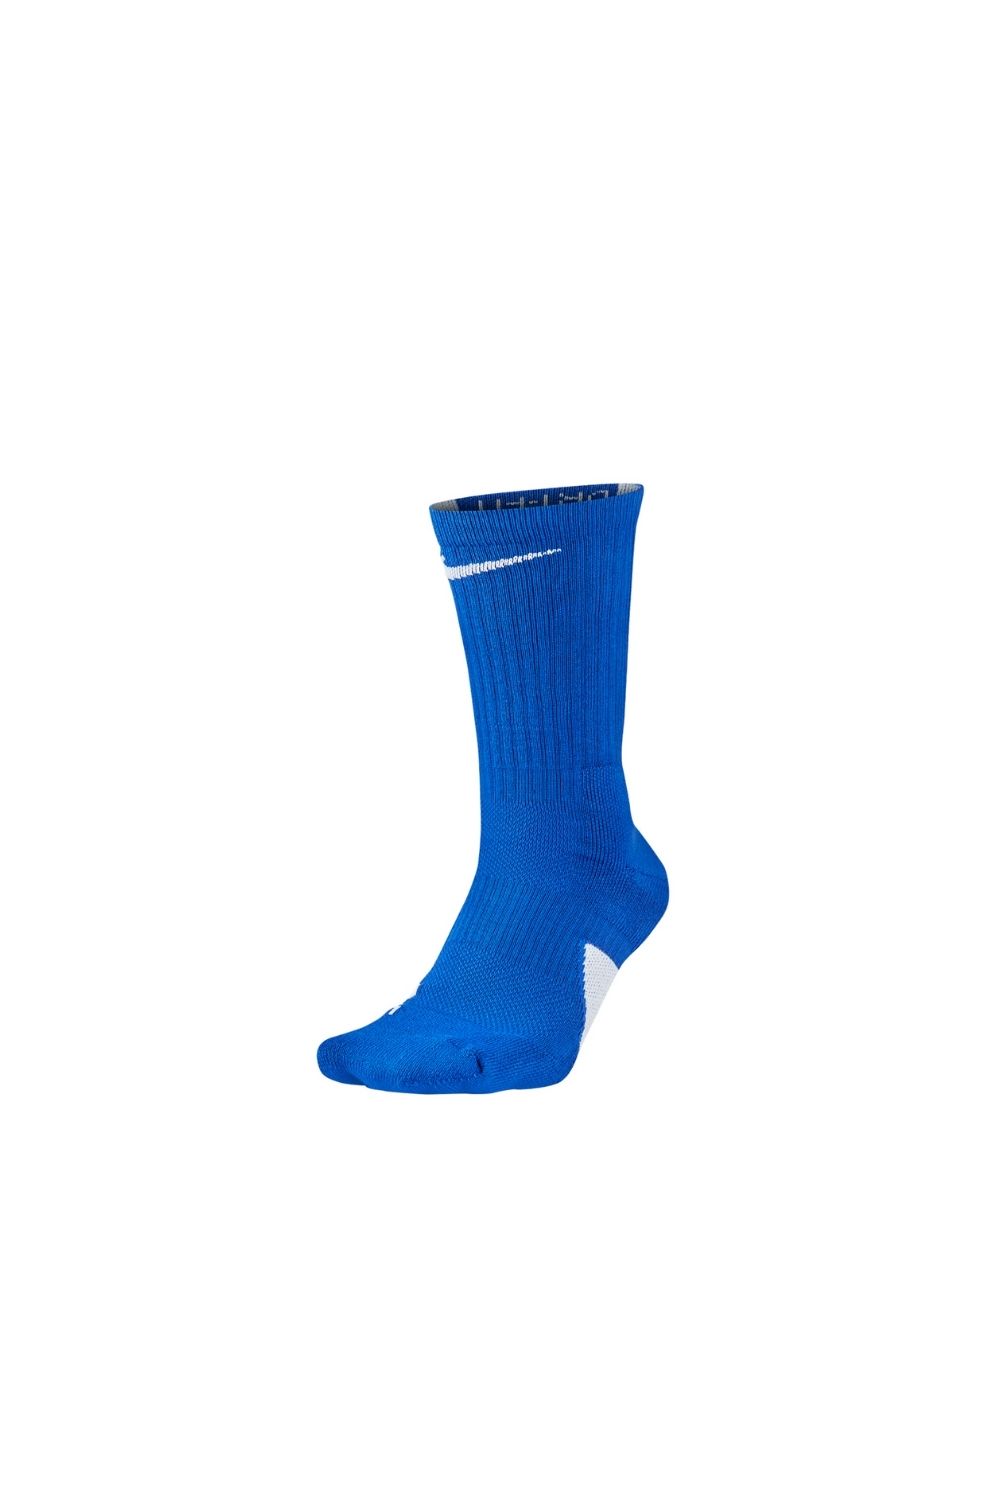 NIKE – Unisex κάλτσες μπάσκετ Nike Elite Basketball Crew μπλε 1643049.1-2591